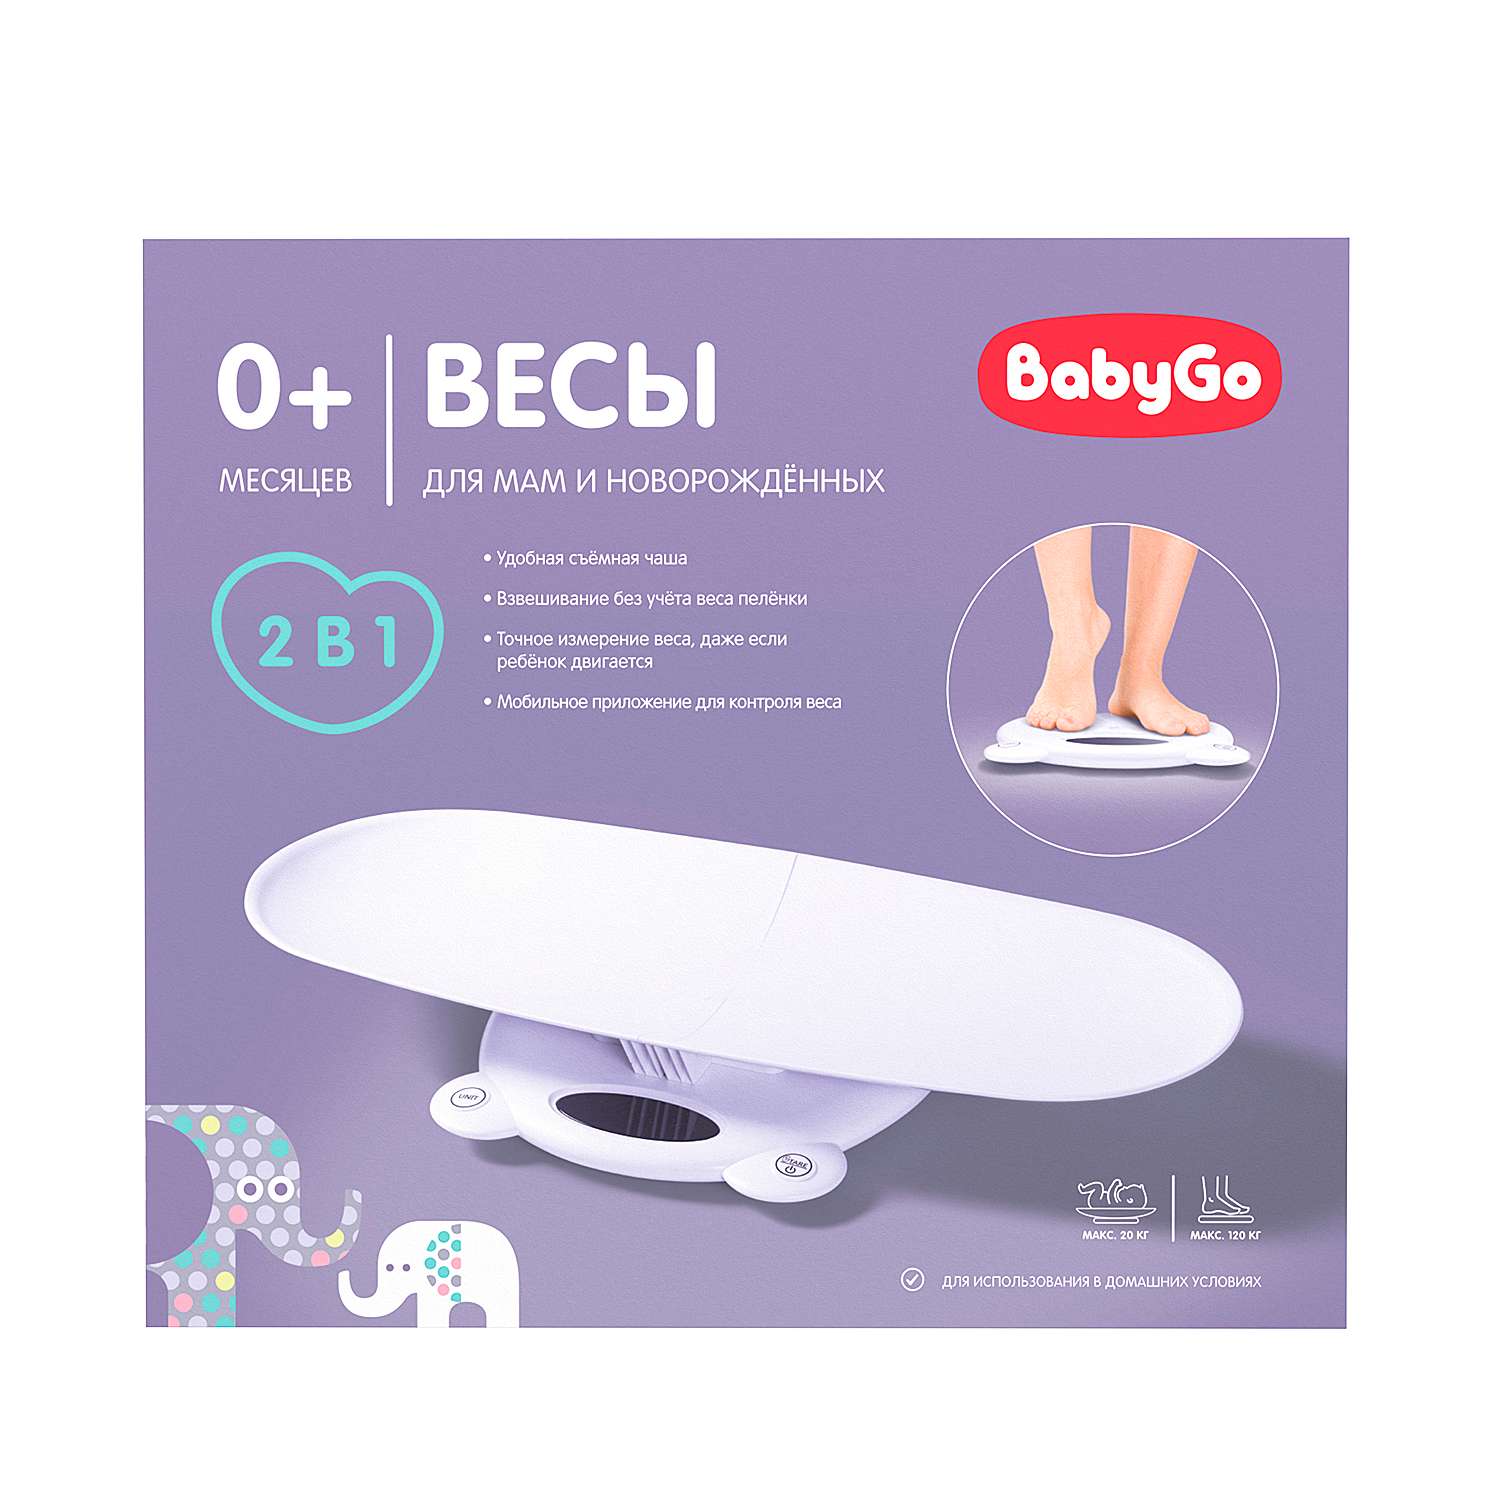 Весы BabyGo универсальные электронные Bluetooth OC-CE-03 - фото 3